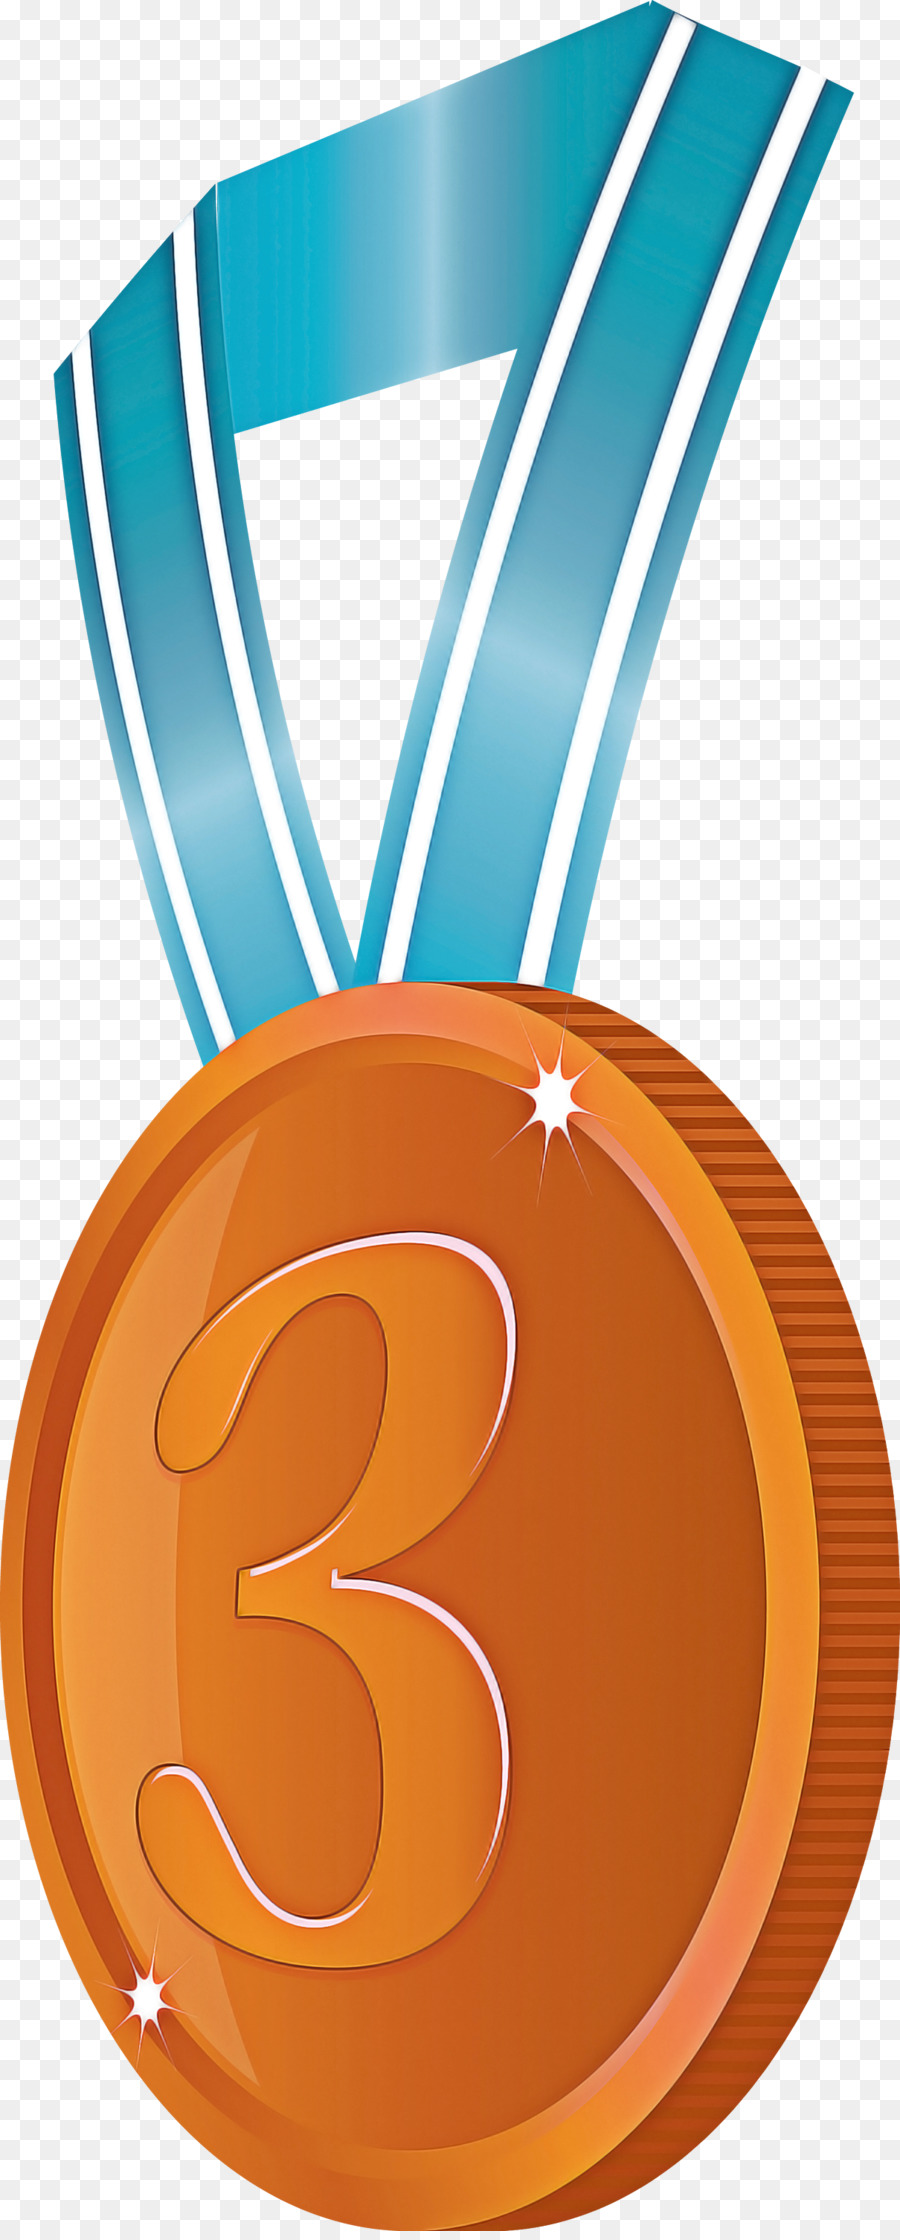 Distintivo del premio distintivo di bronzo - 